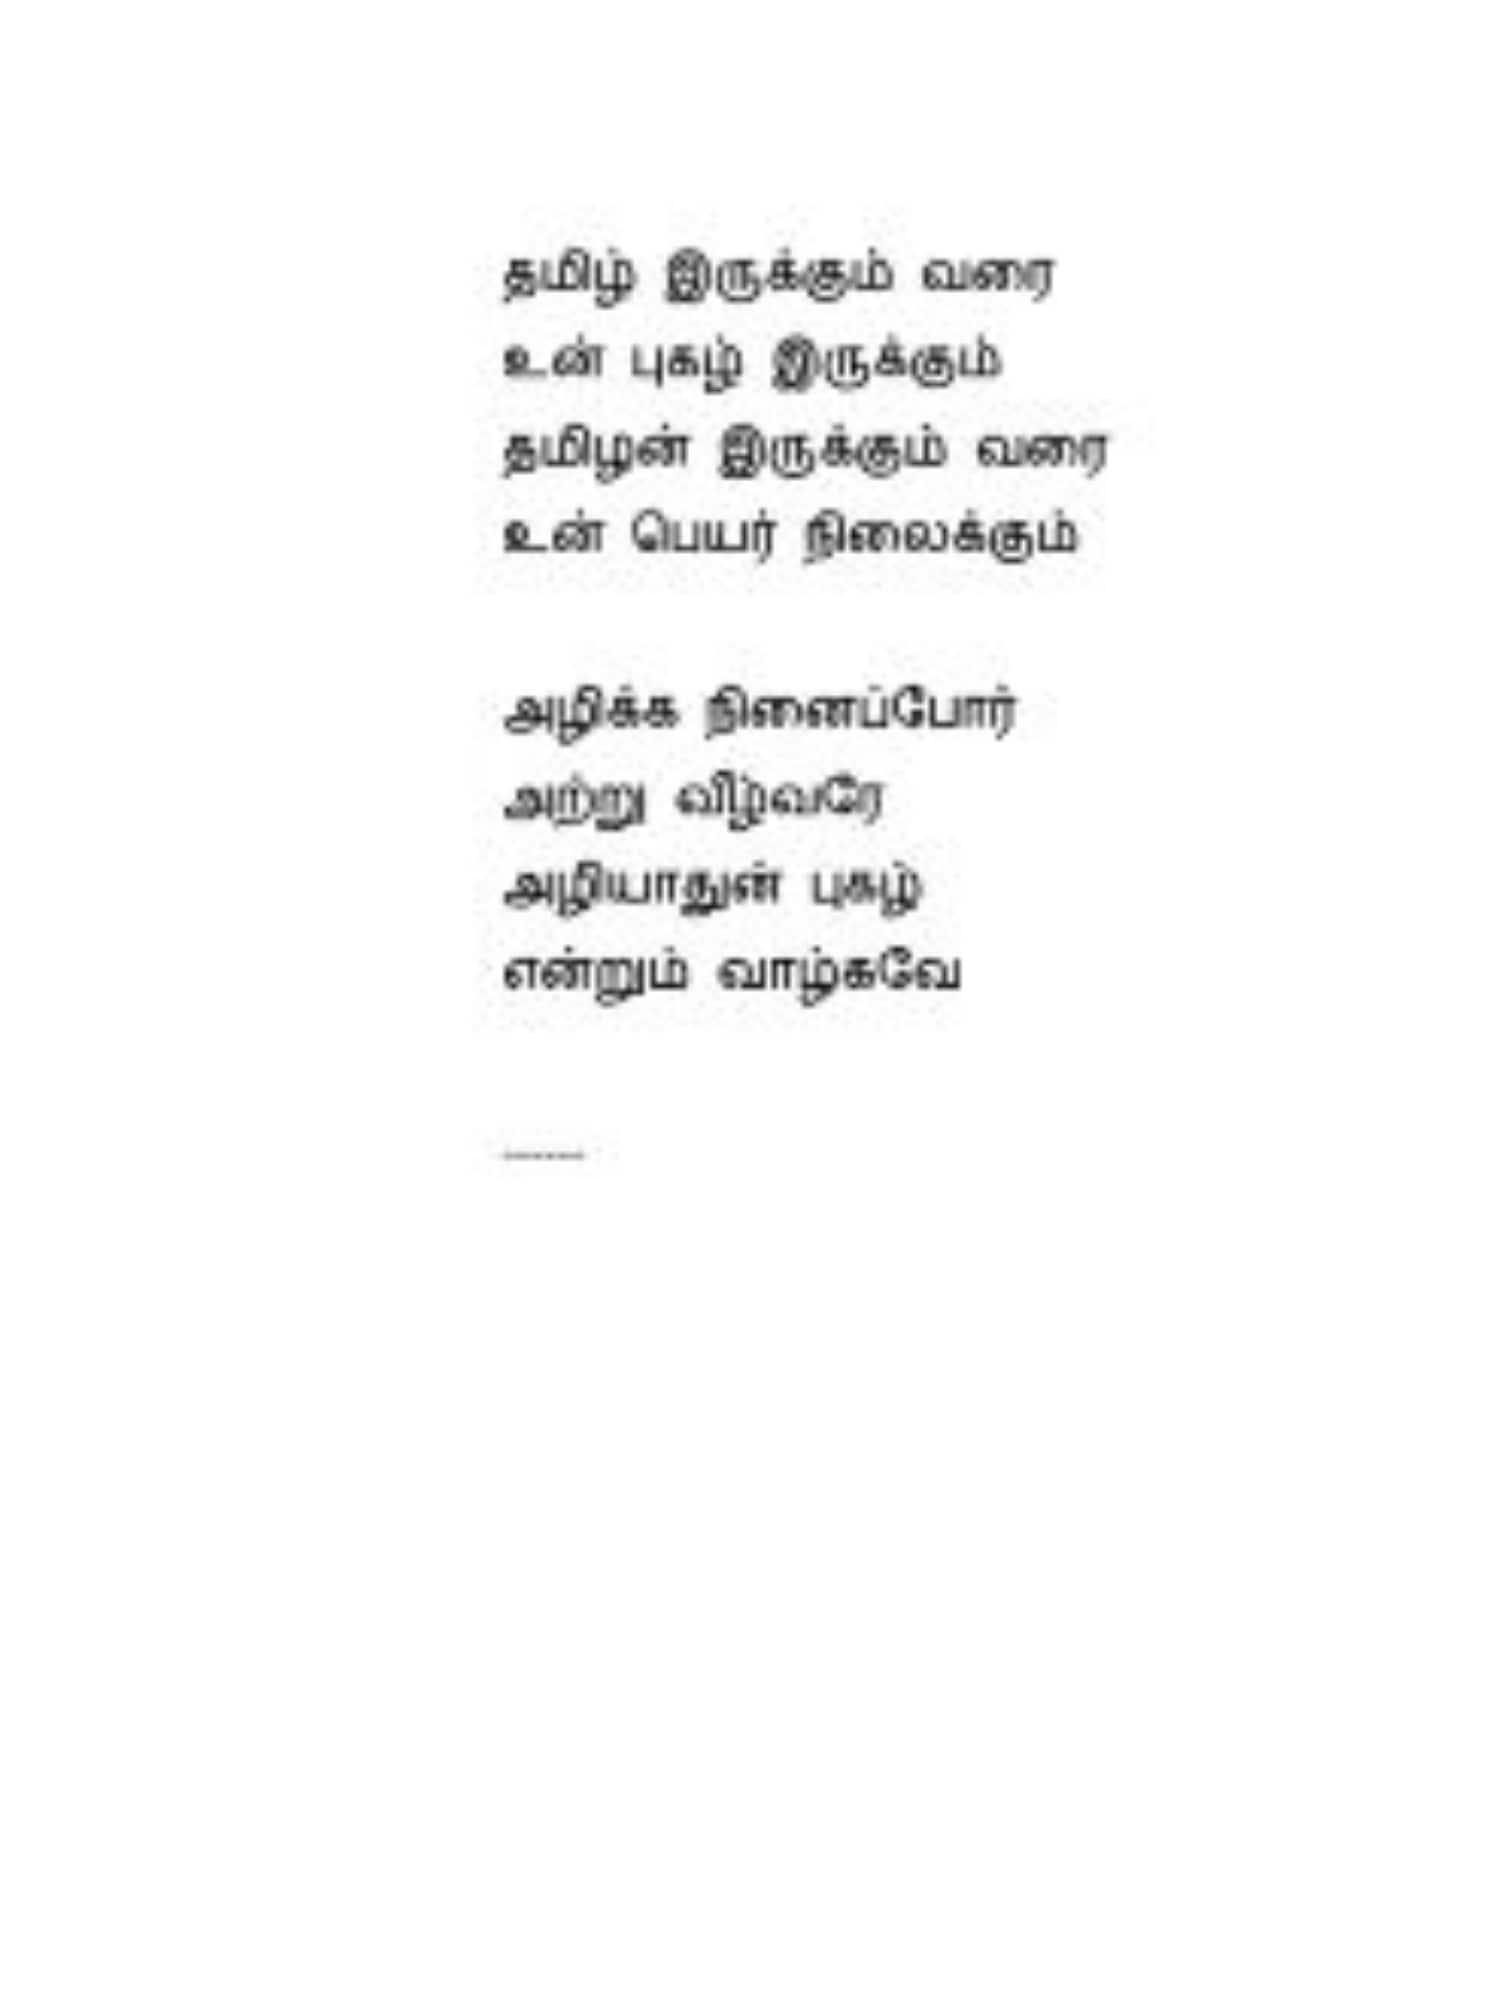 ameer wrote the poem for karunanithi